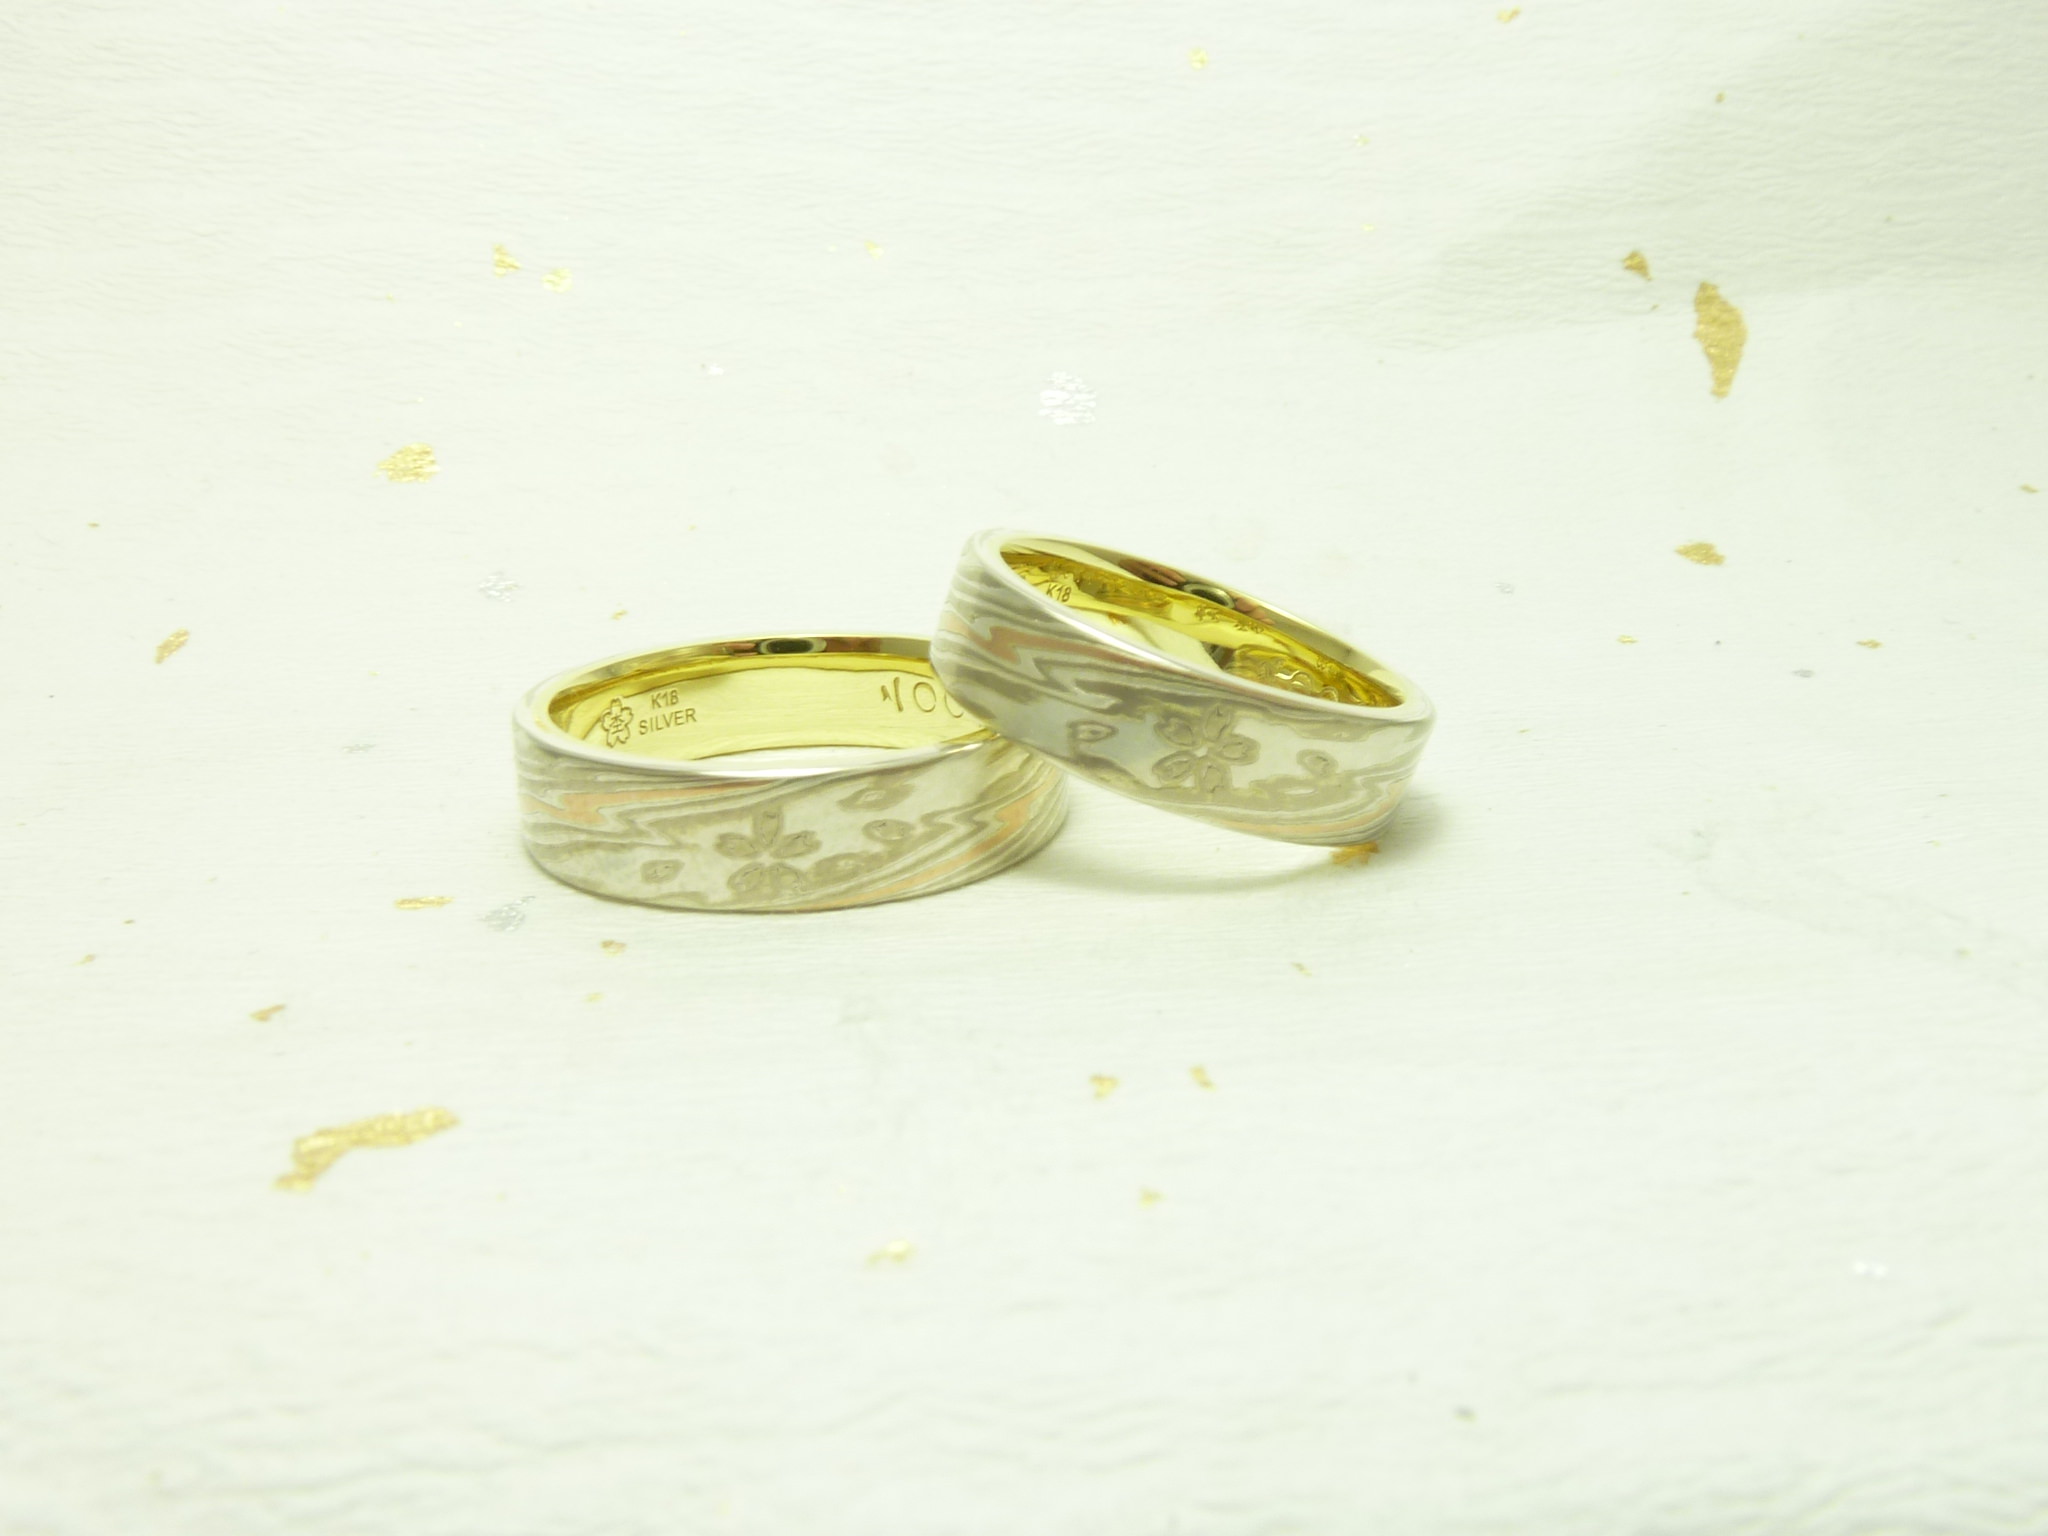 二人の想いをカタチにする結婚指輪・婚約指輪。世界に1つだけをオーダーメイド。結婚指輪・婚約指輪の杢目金屋